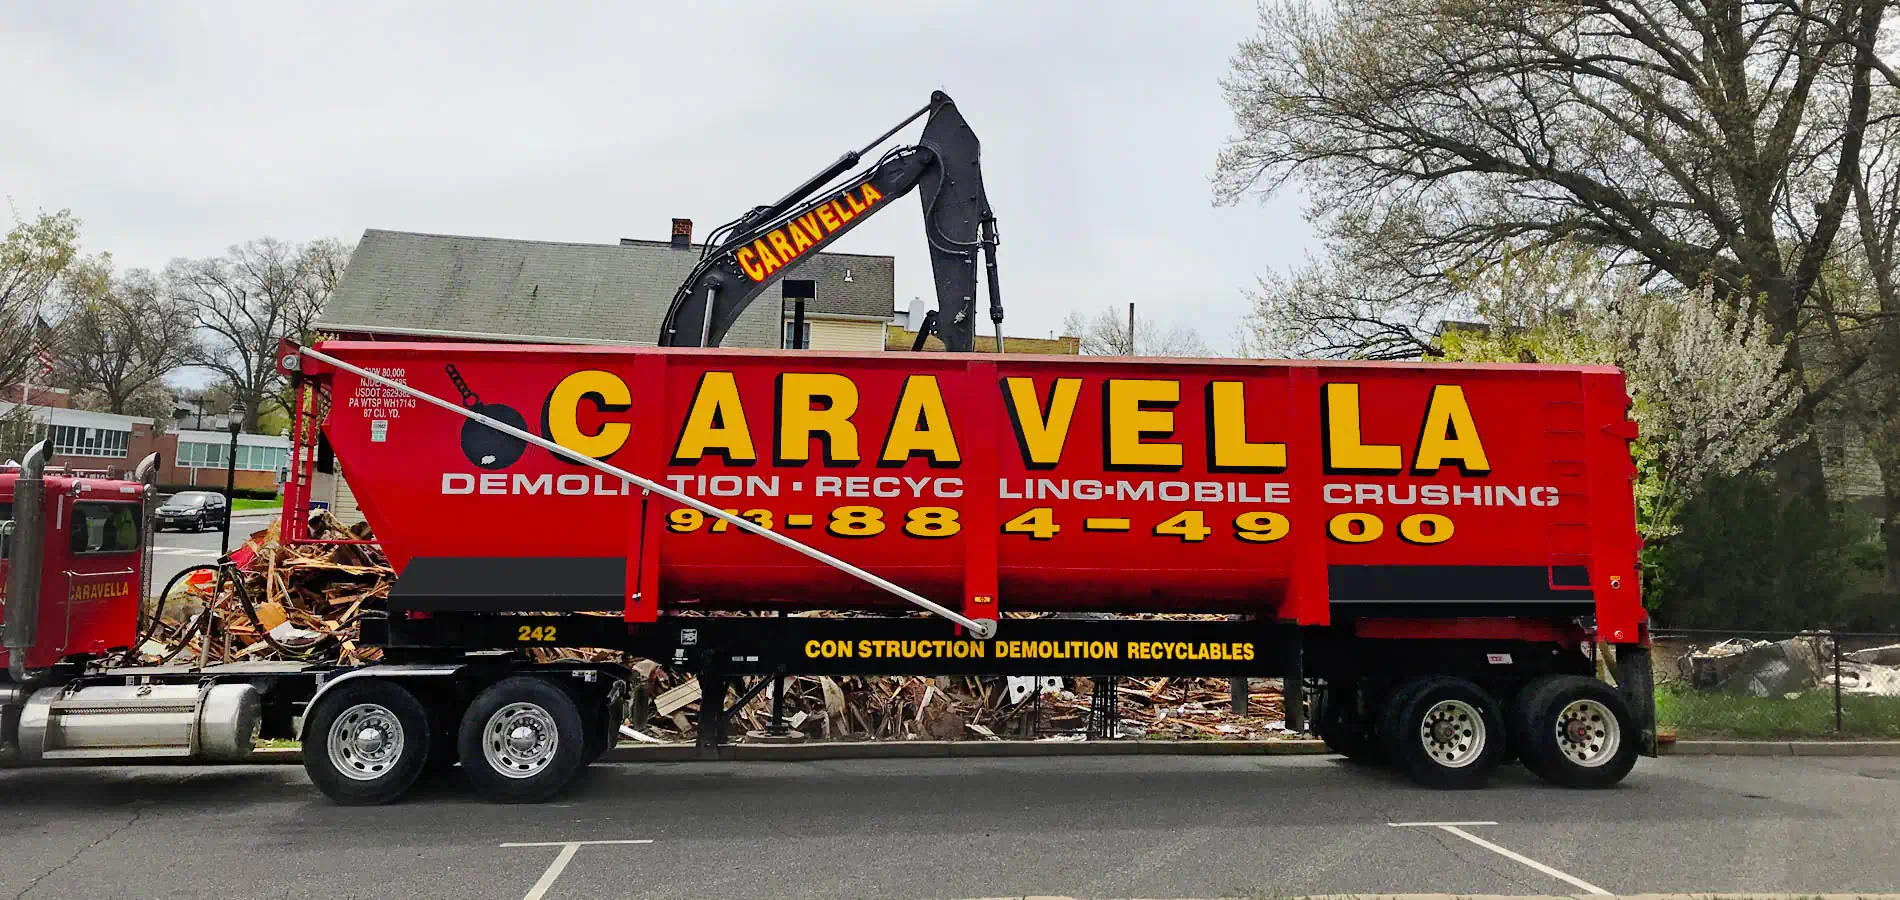 Demolition Services in Rahway, NJ 07065 | Caravella Demolition